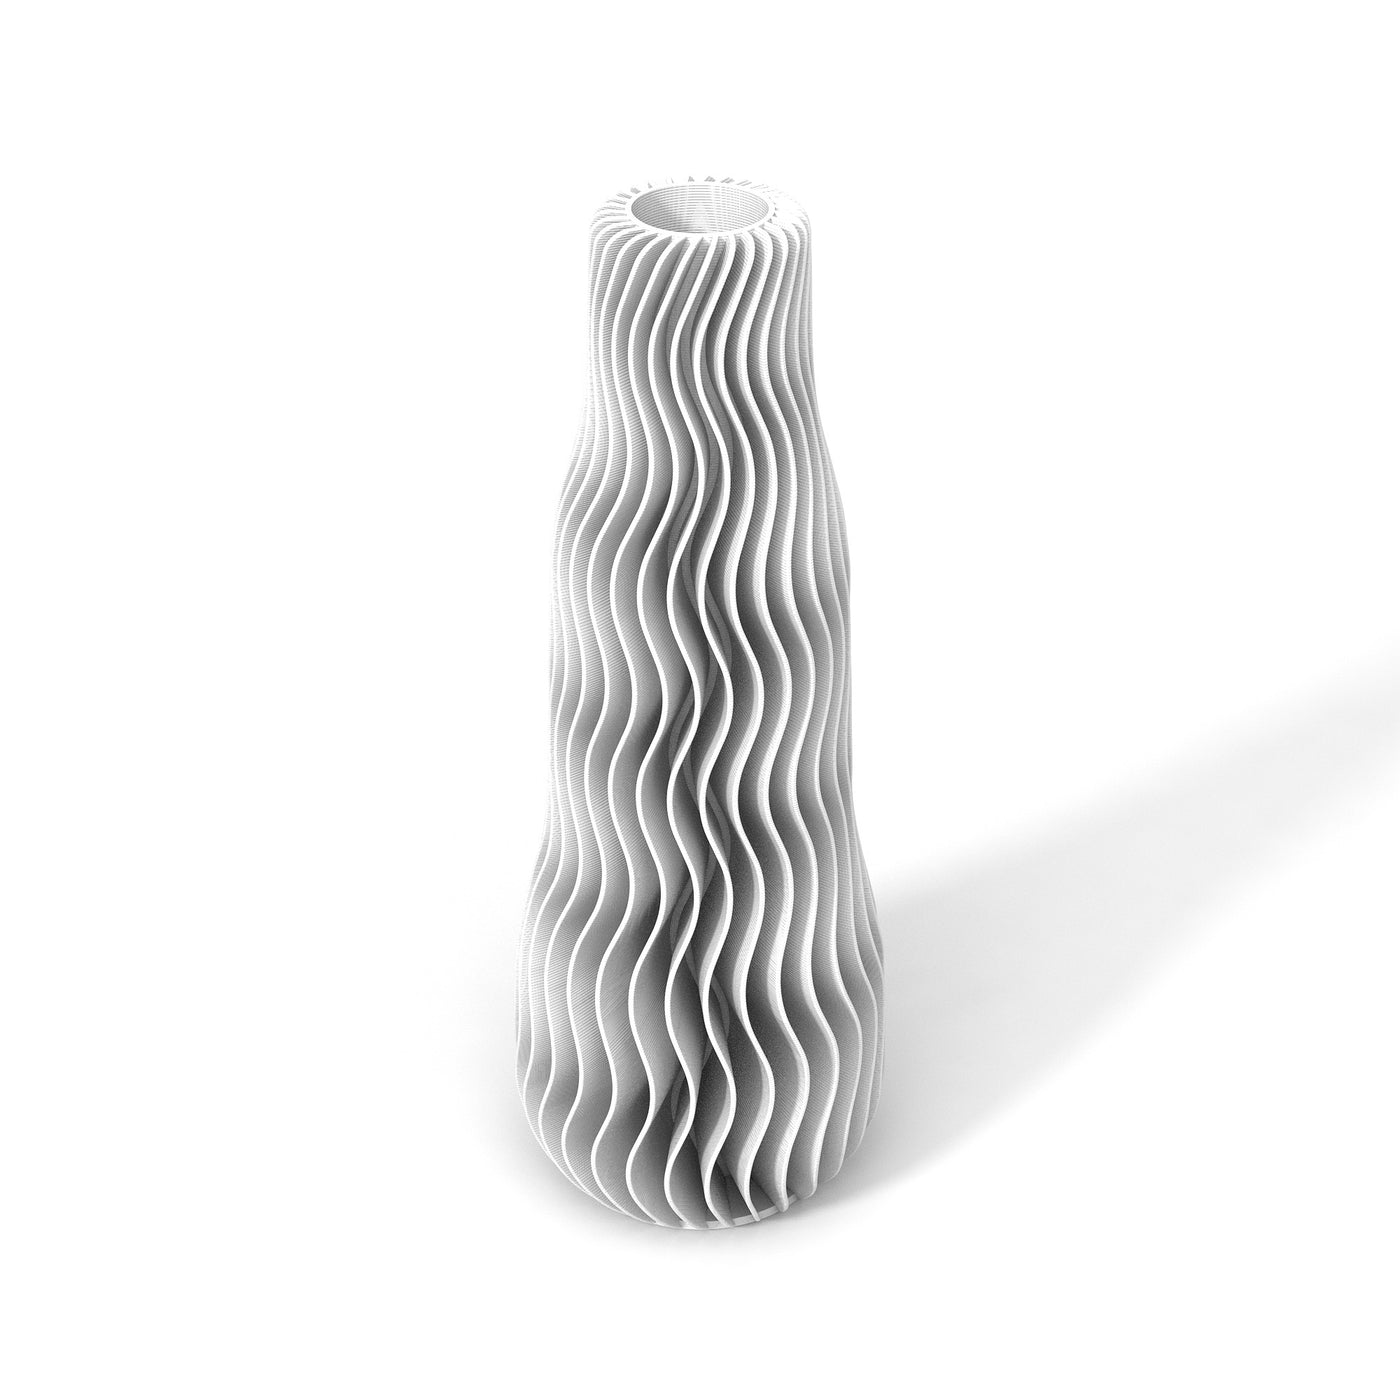 Bílá designová váza 3D print WAVE 1